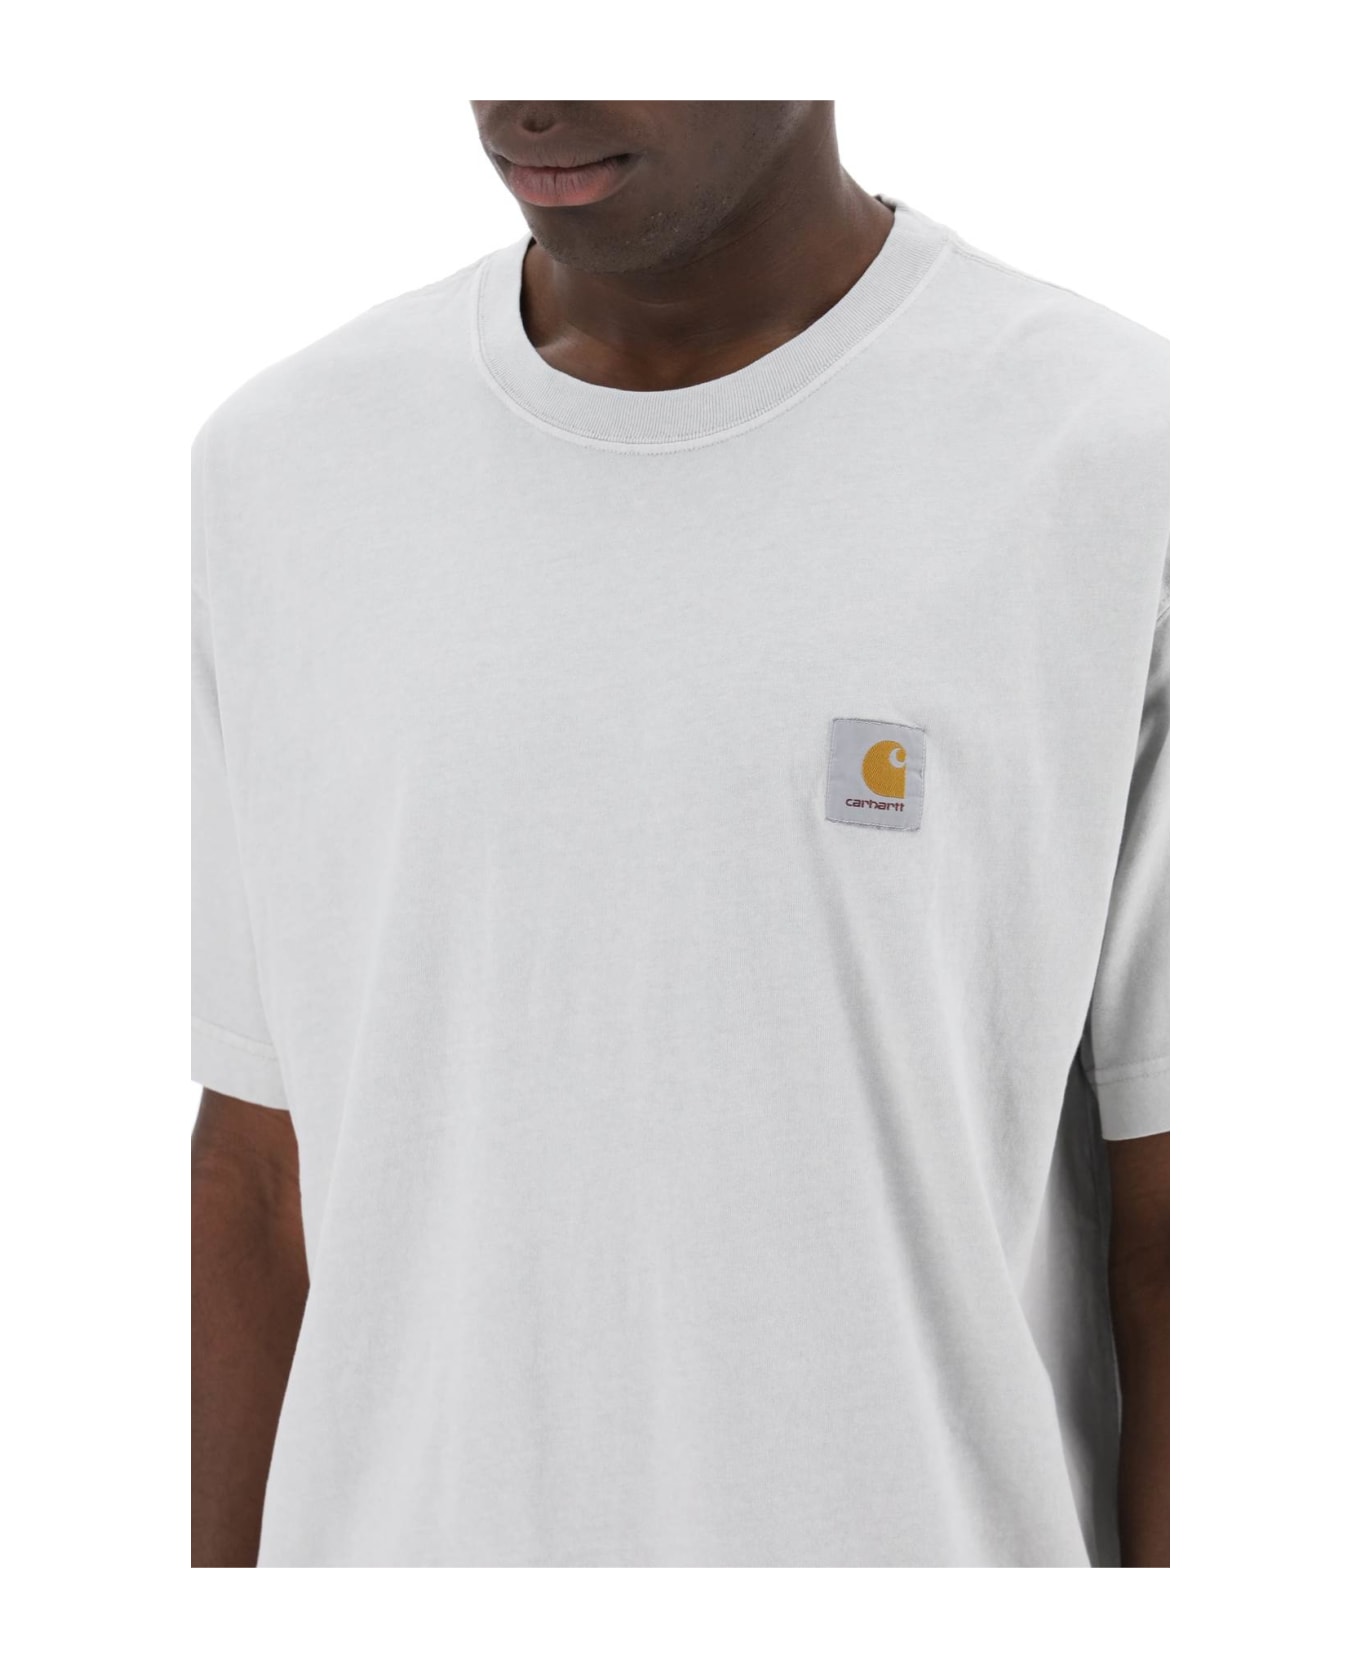 Carhartt WIP Nelson T-shirt - Grey